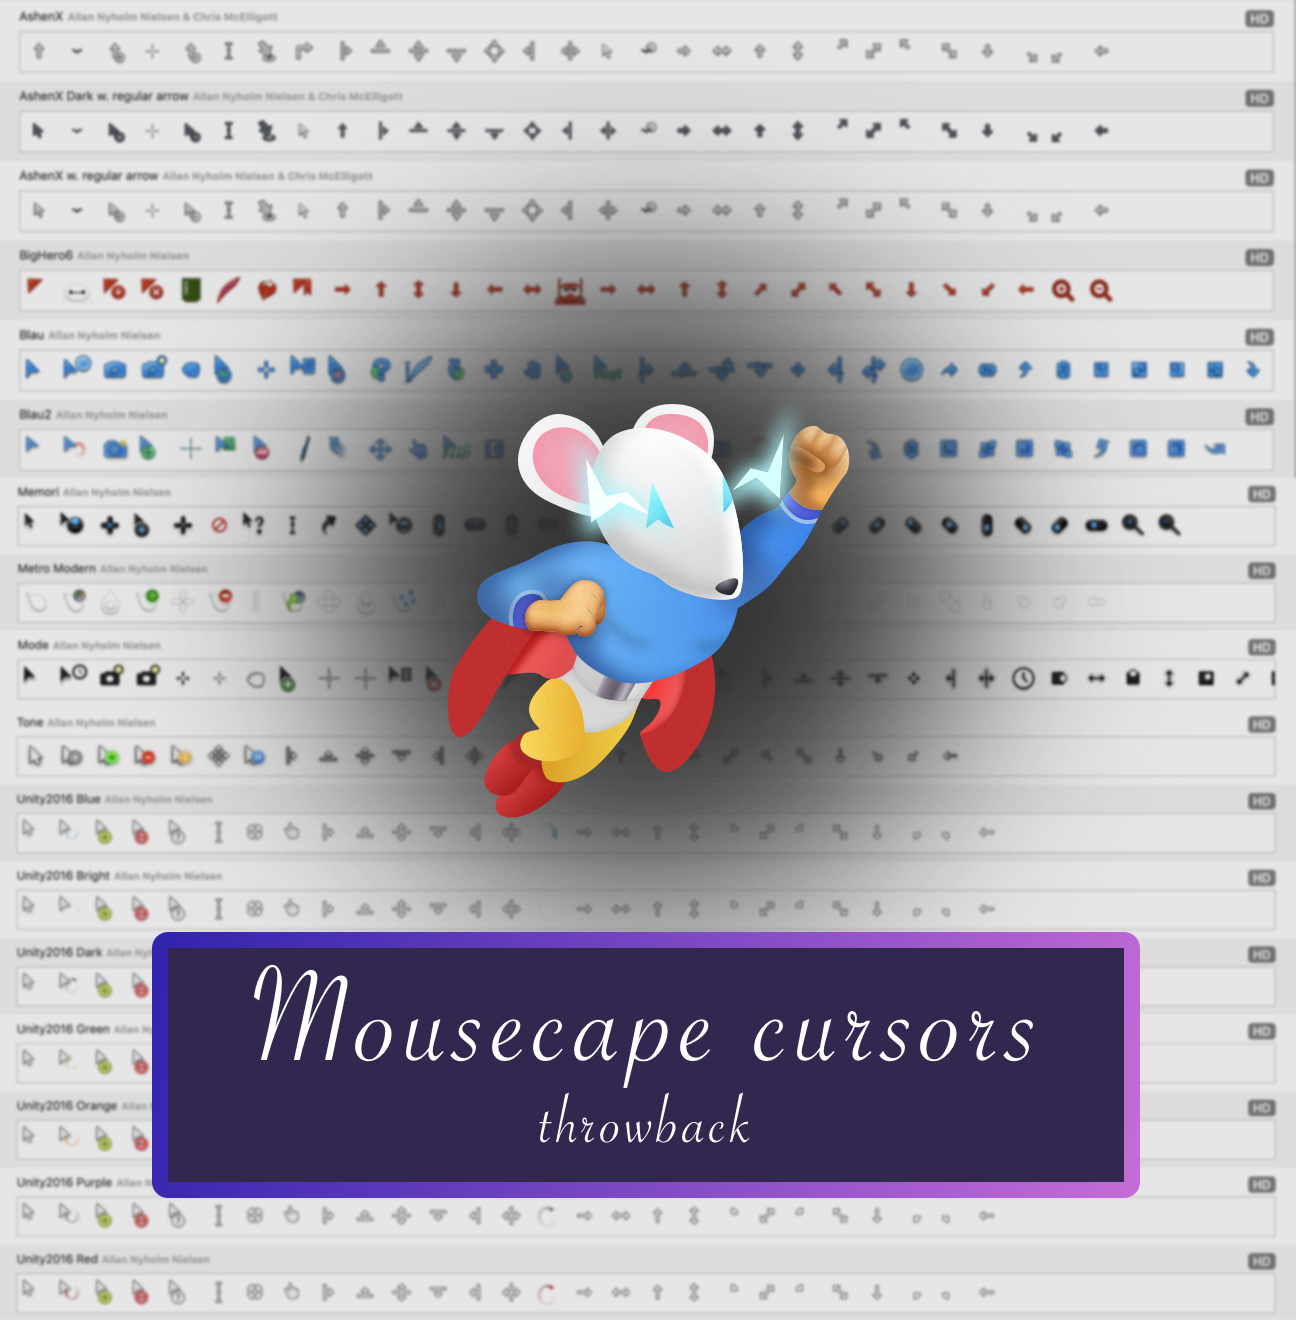 Mousecape